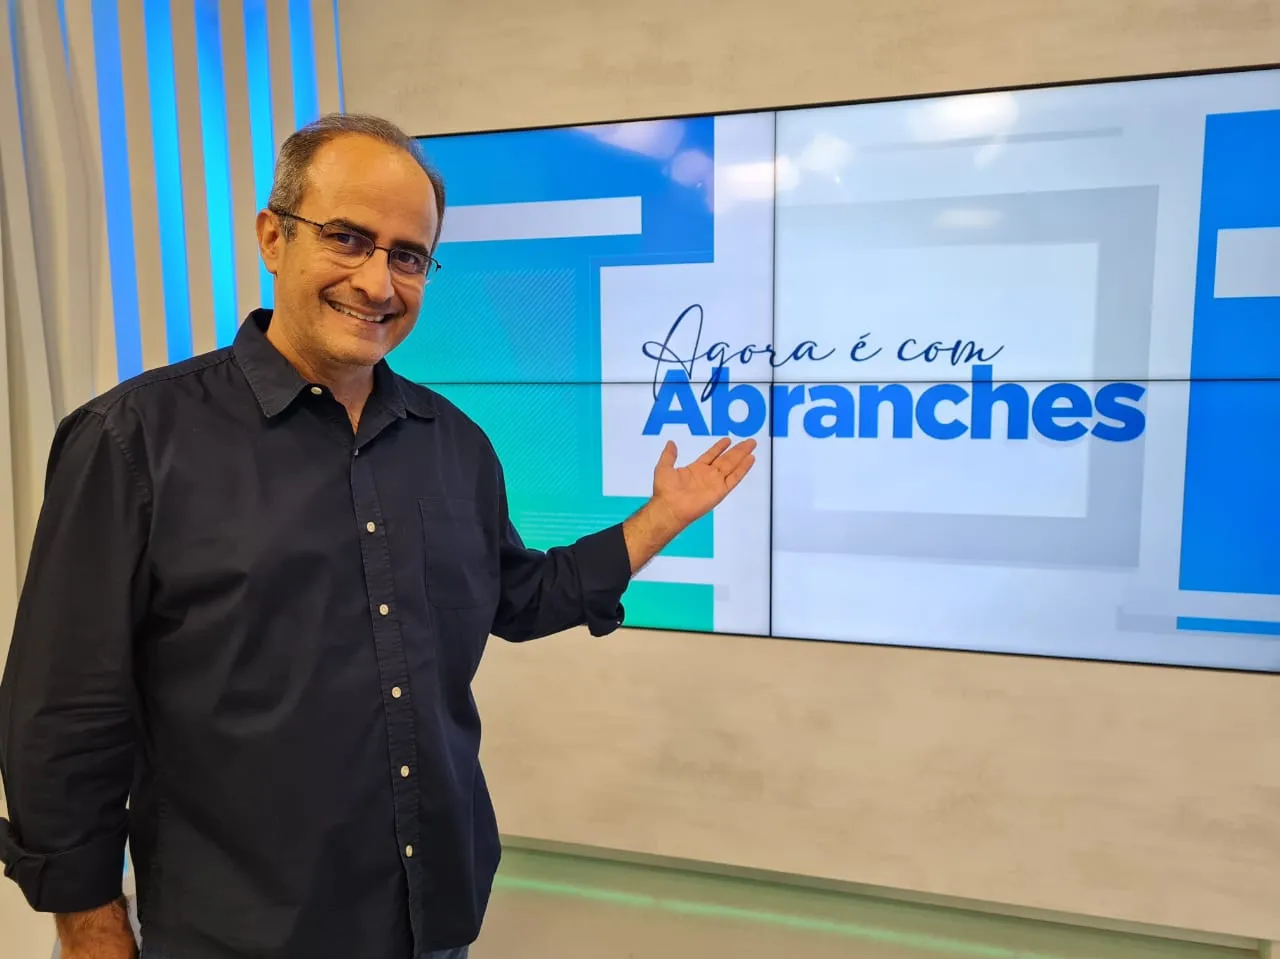 Carlos Abranches comandará "Agora é com Abranches" a partir de 12 de junho na TV Band Vale